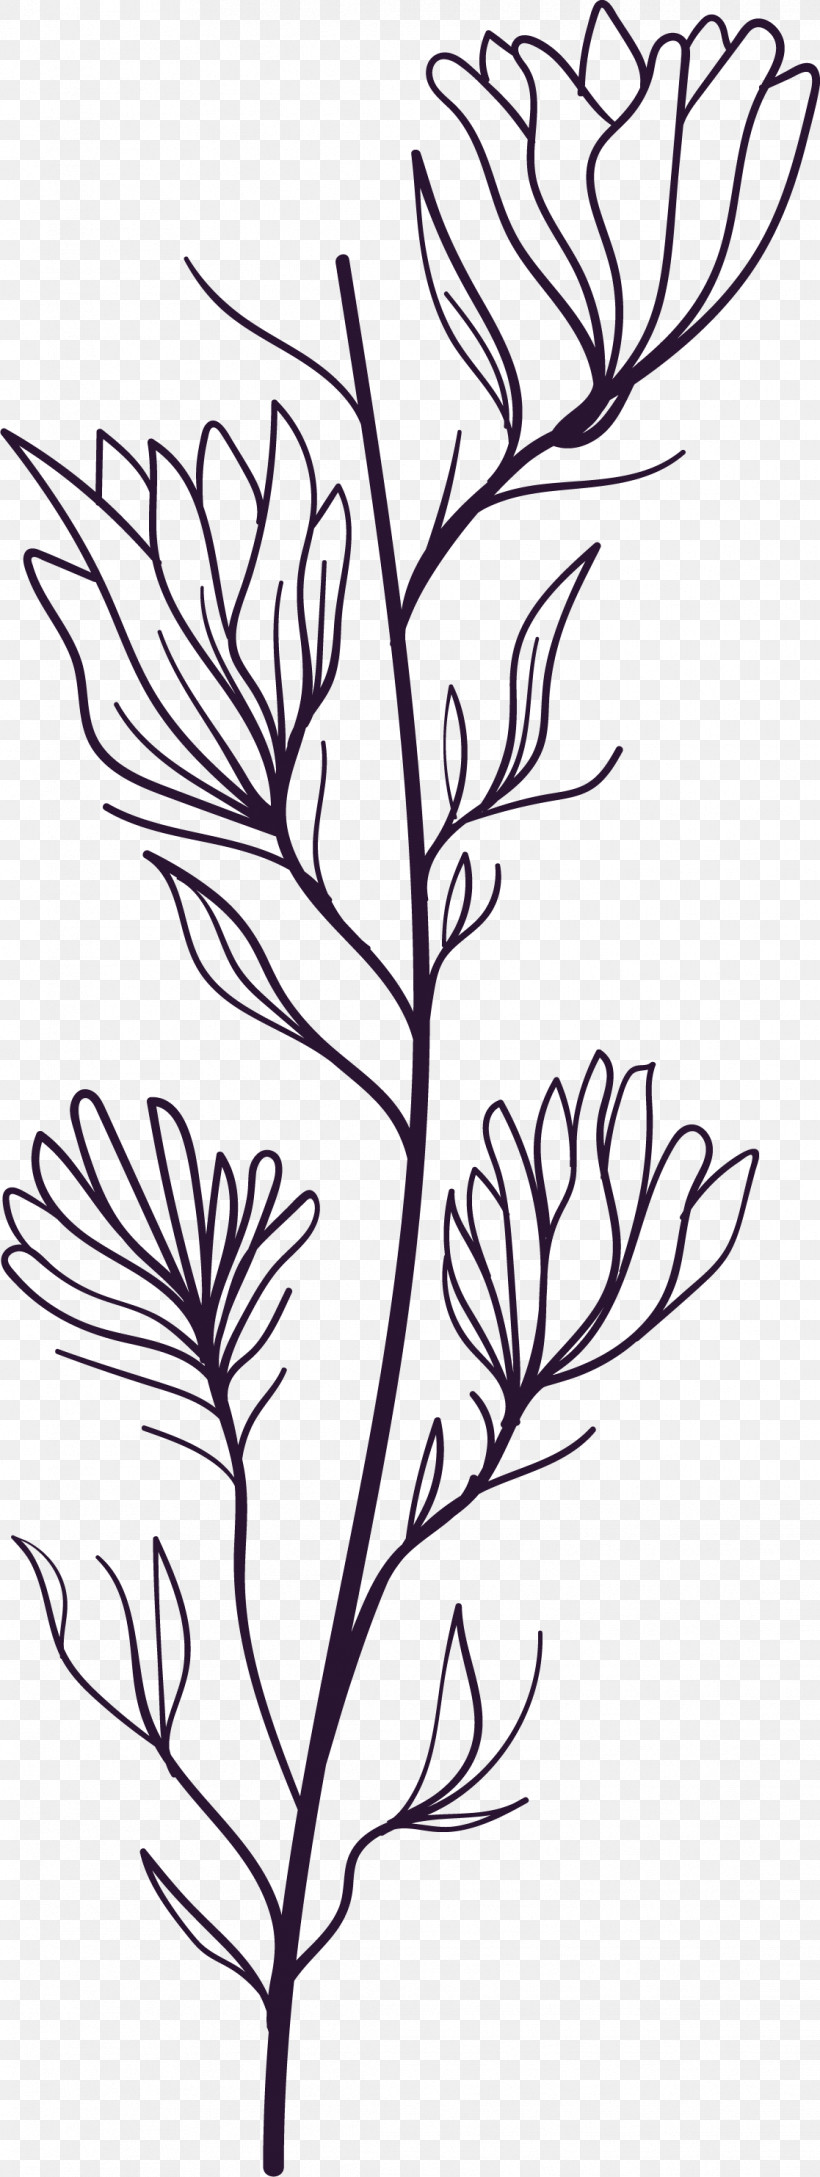 Simple Leaf Simple Leaf Drawing Simple Leaf Outline, PNG, 1117x2966px, Simple Leaf, Biology, Black White M, Floral Design, Flower Download Free